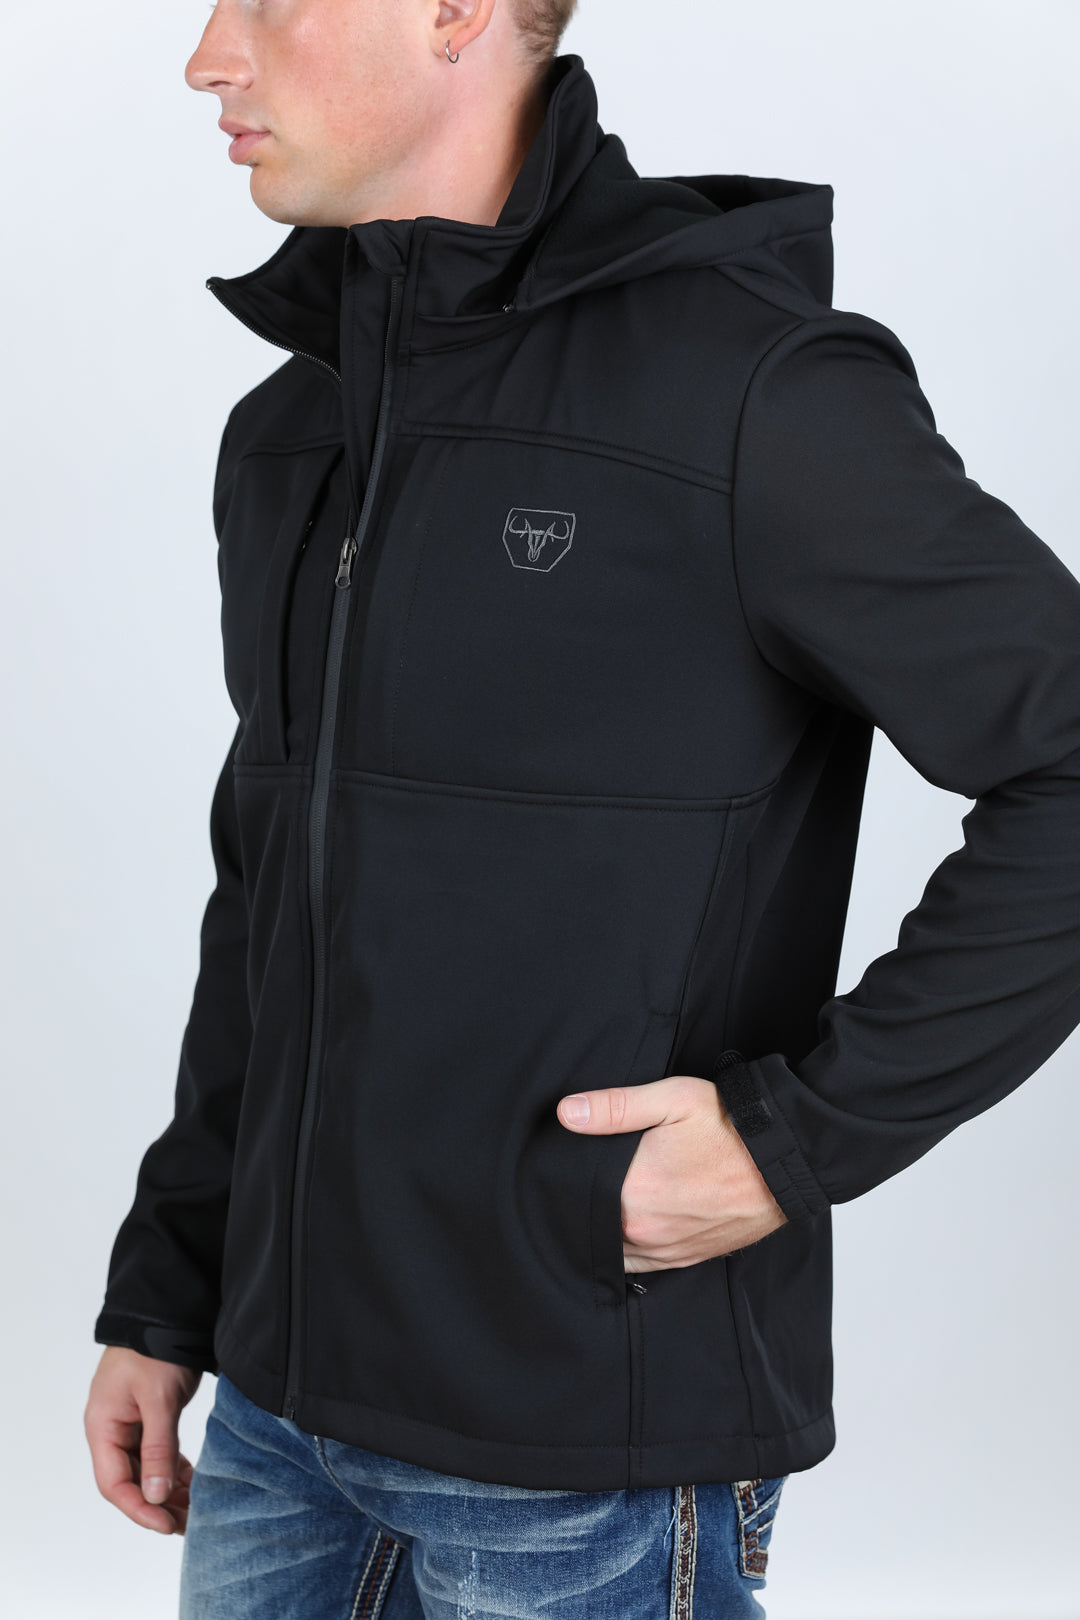 Mens Hooded Softshell Water-Resistant Jacket - Black